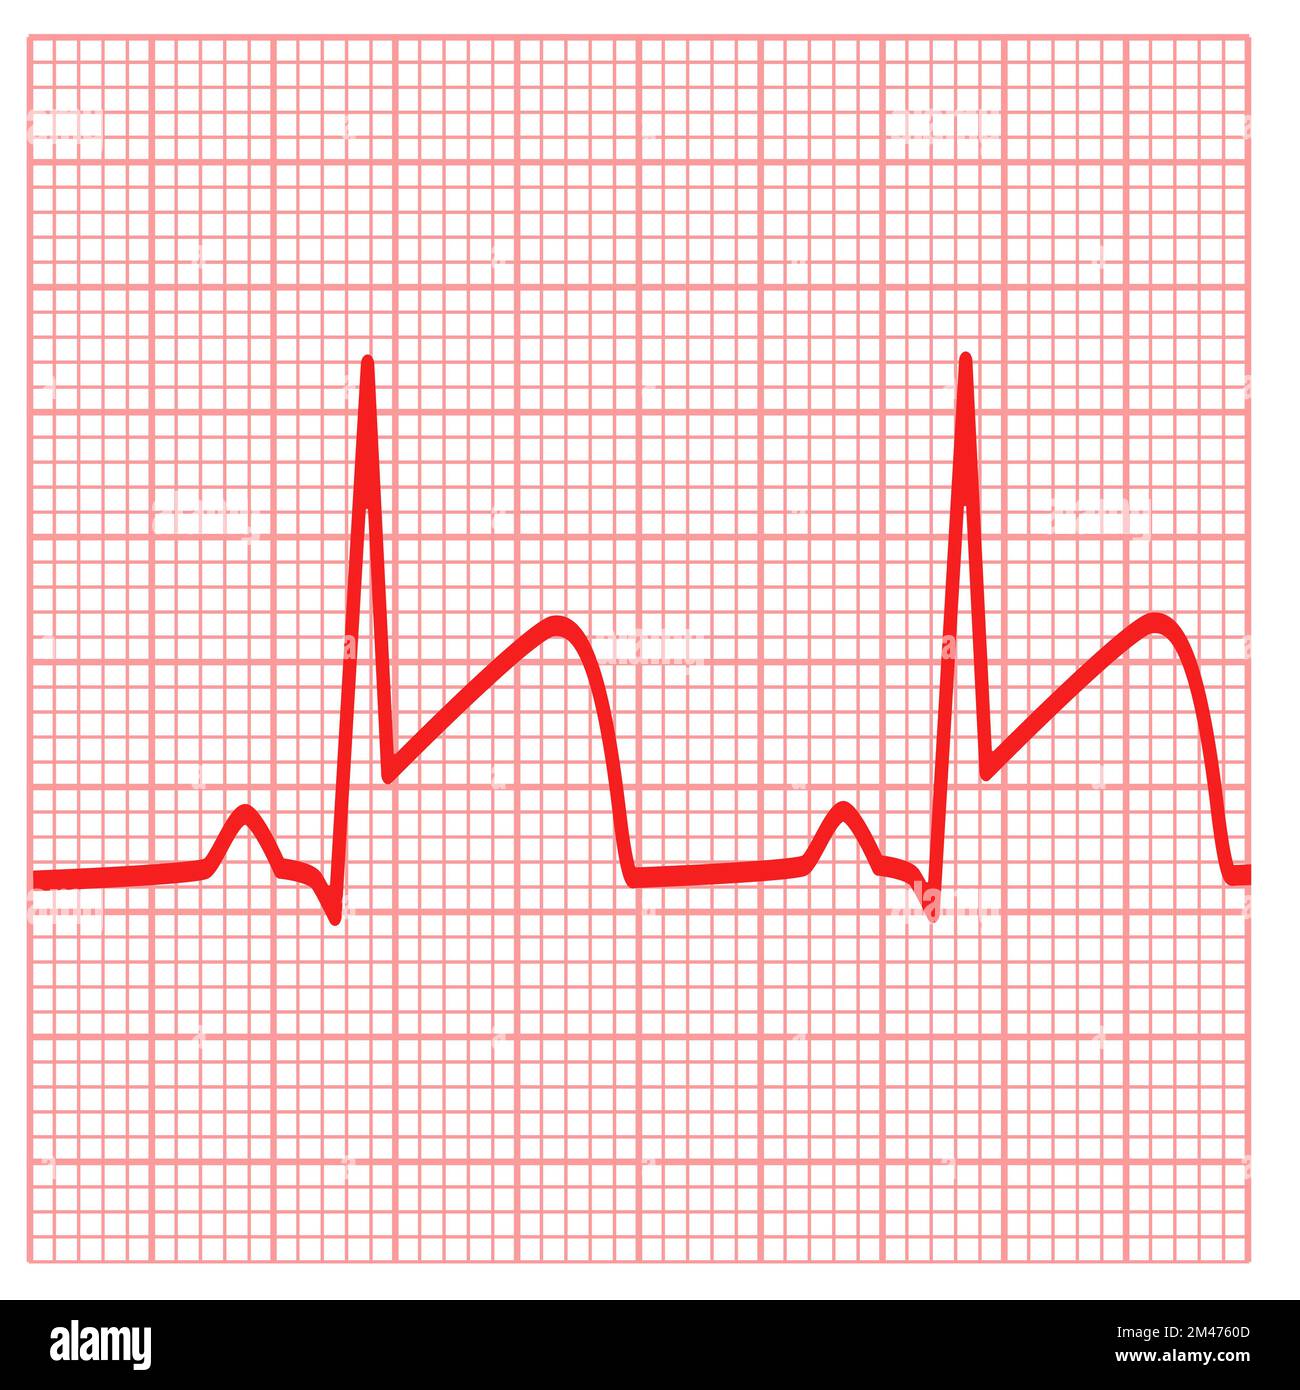 Mostra gli ECG per infarto miocardico. Segno di attacco cardiaco. simbolo  di trombosi dell'arteria coronaria. stile piatto Foto stock - Alamy